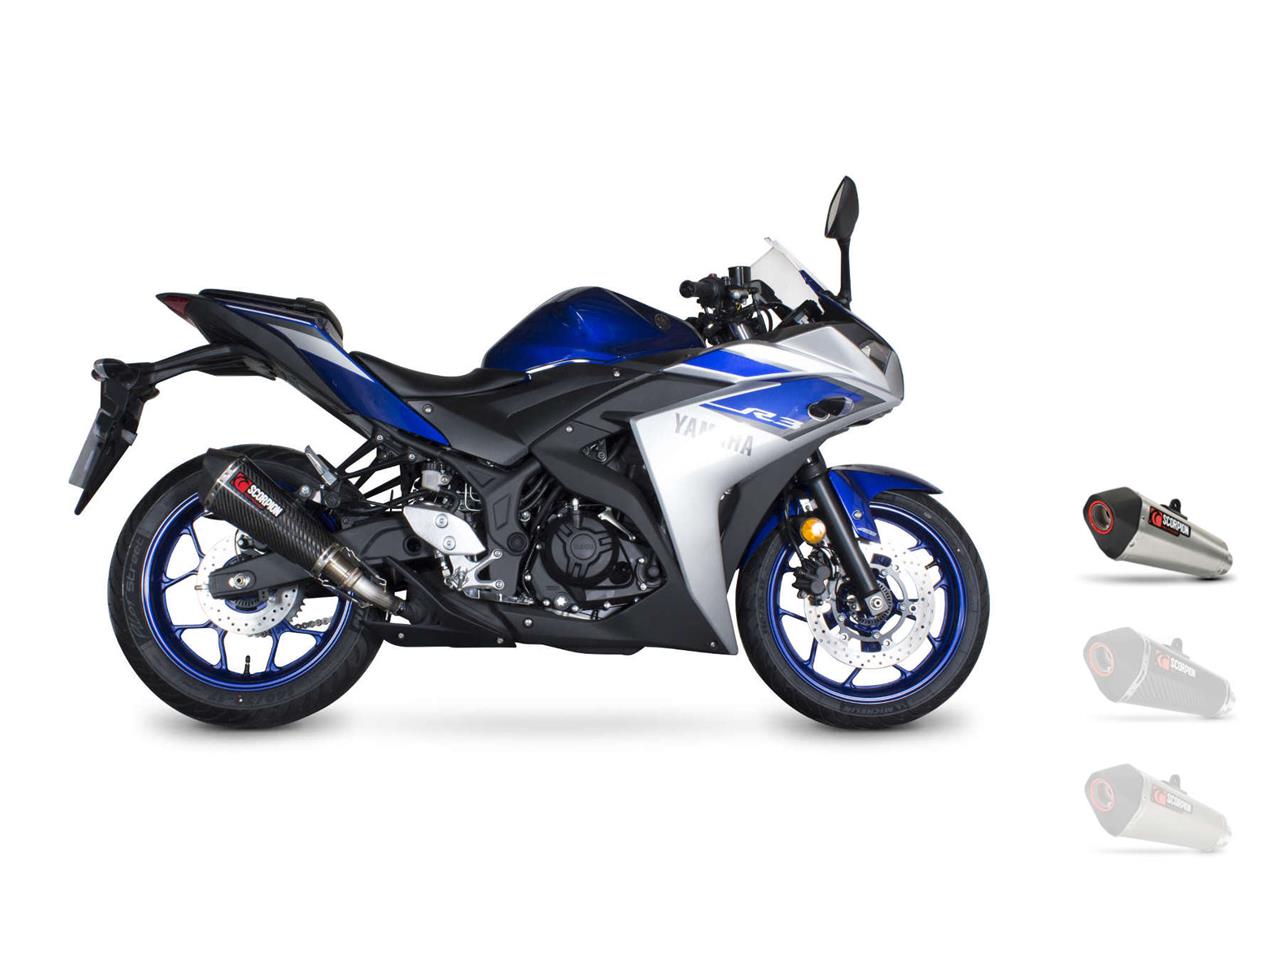 Silencieux d'échappement Moto Scorpion Serket Inox pour Yamaha YFZ-R3 (14-17)